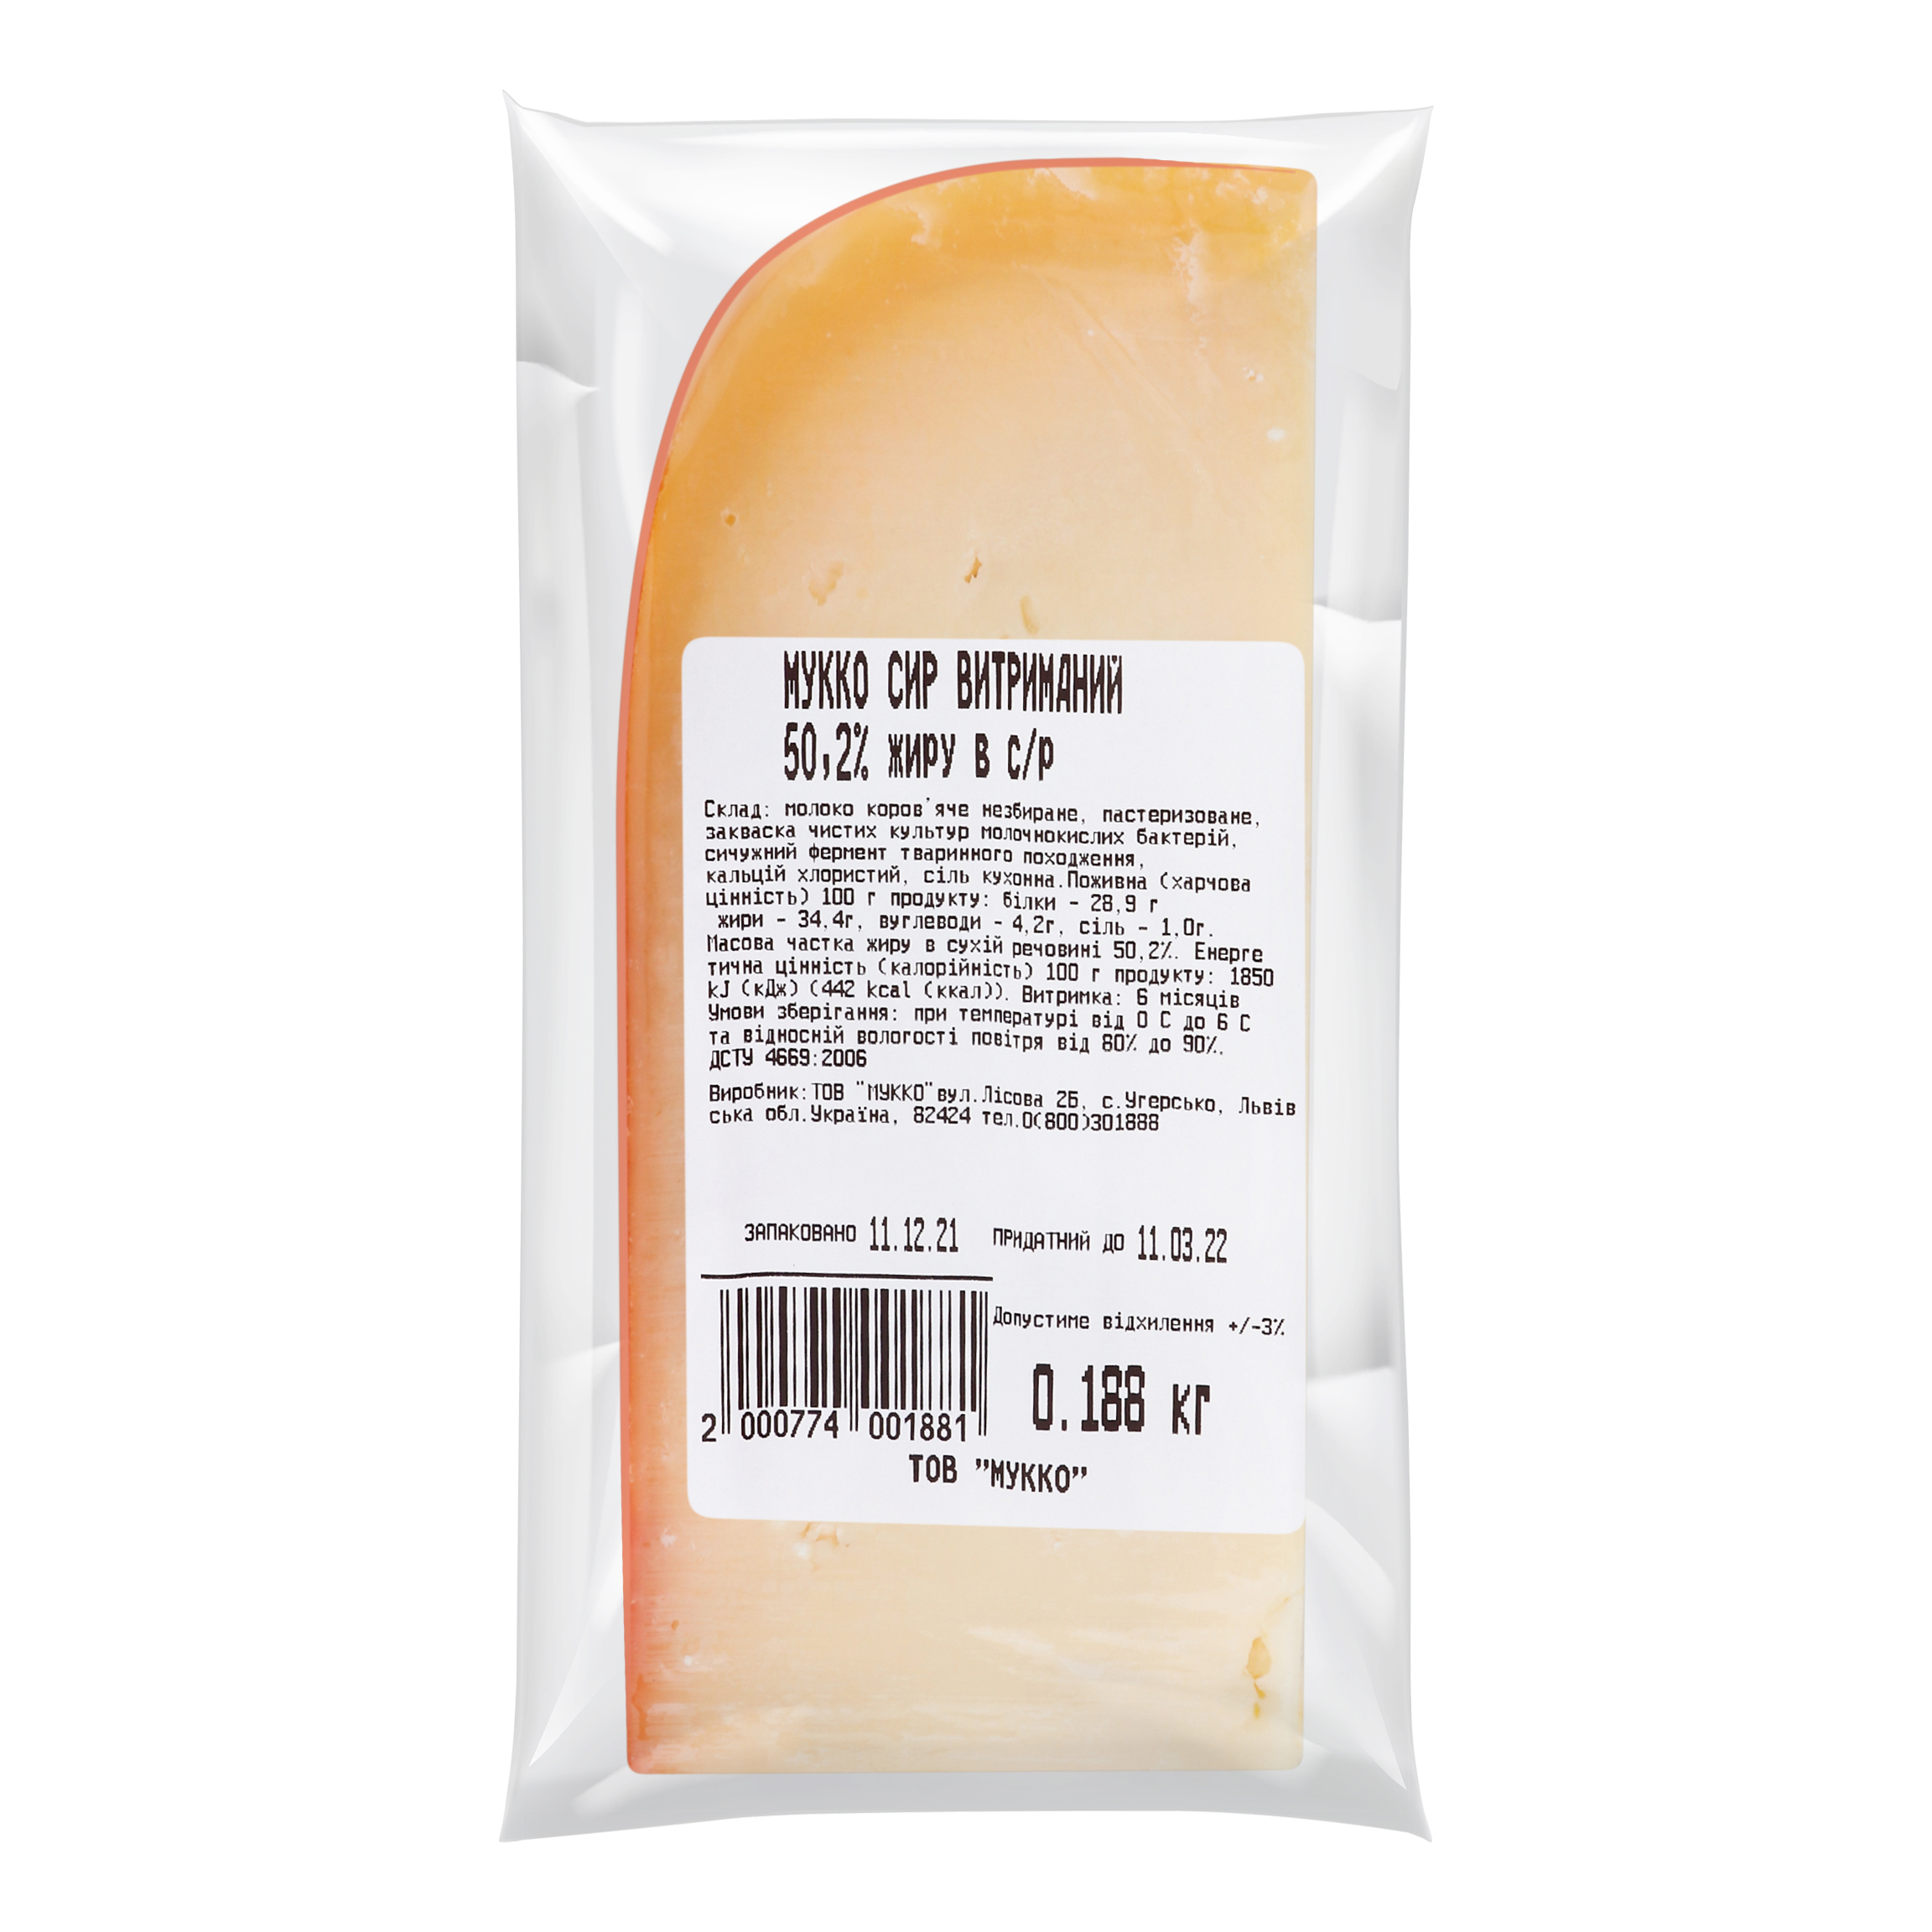 Mukko cheese aged 6 months 50.2% 2